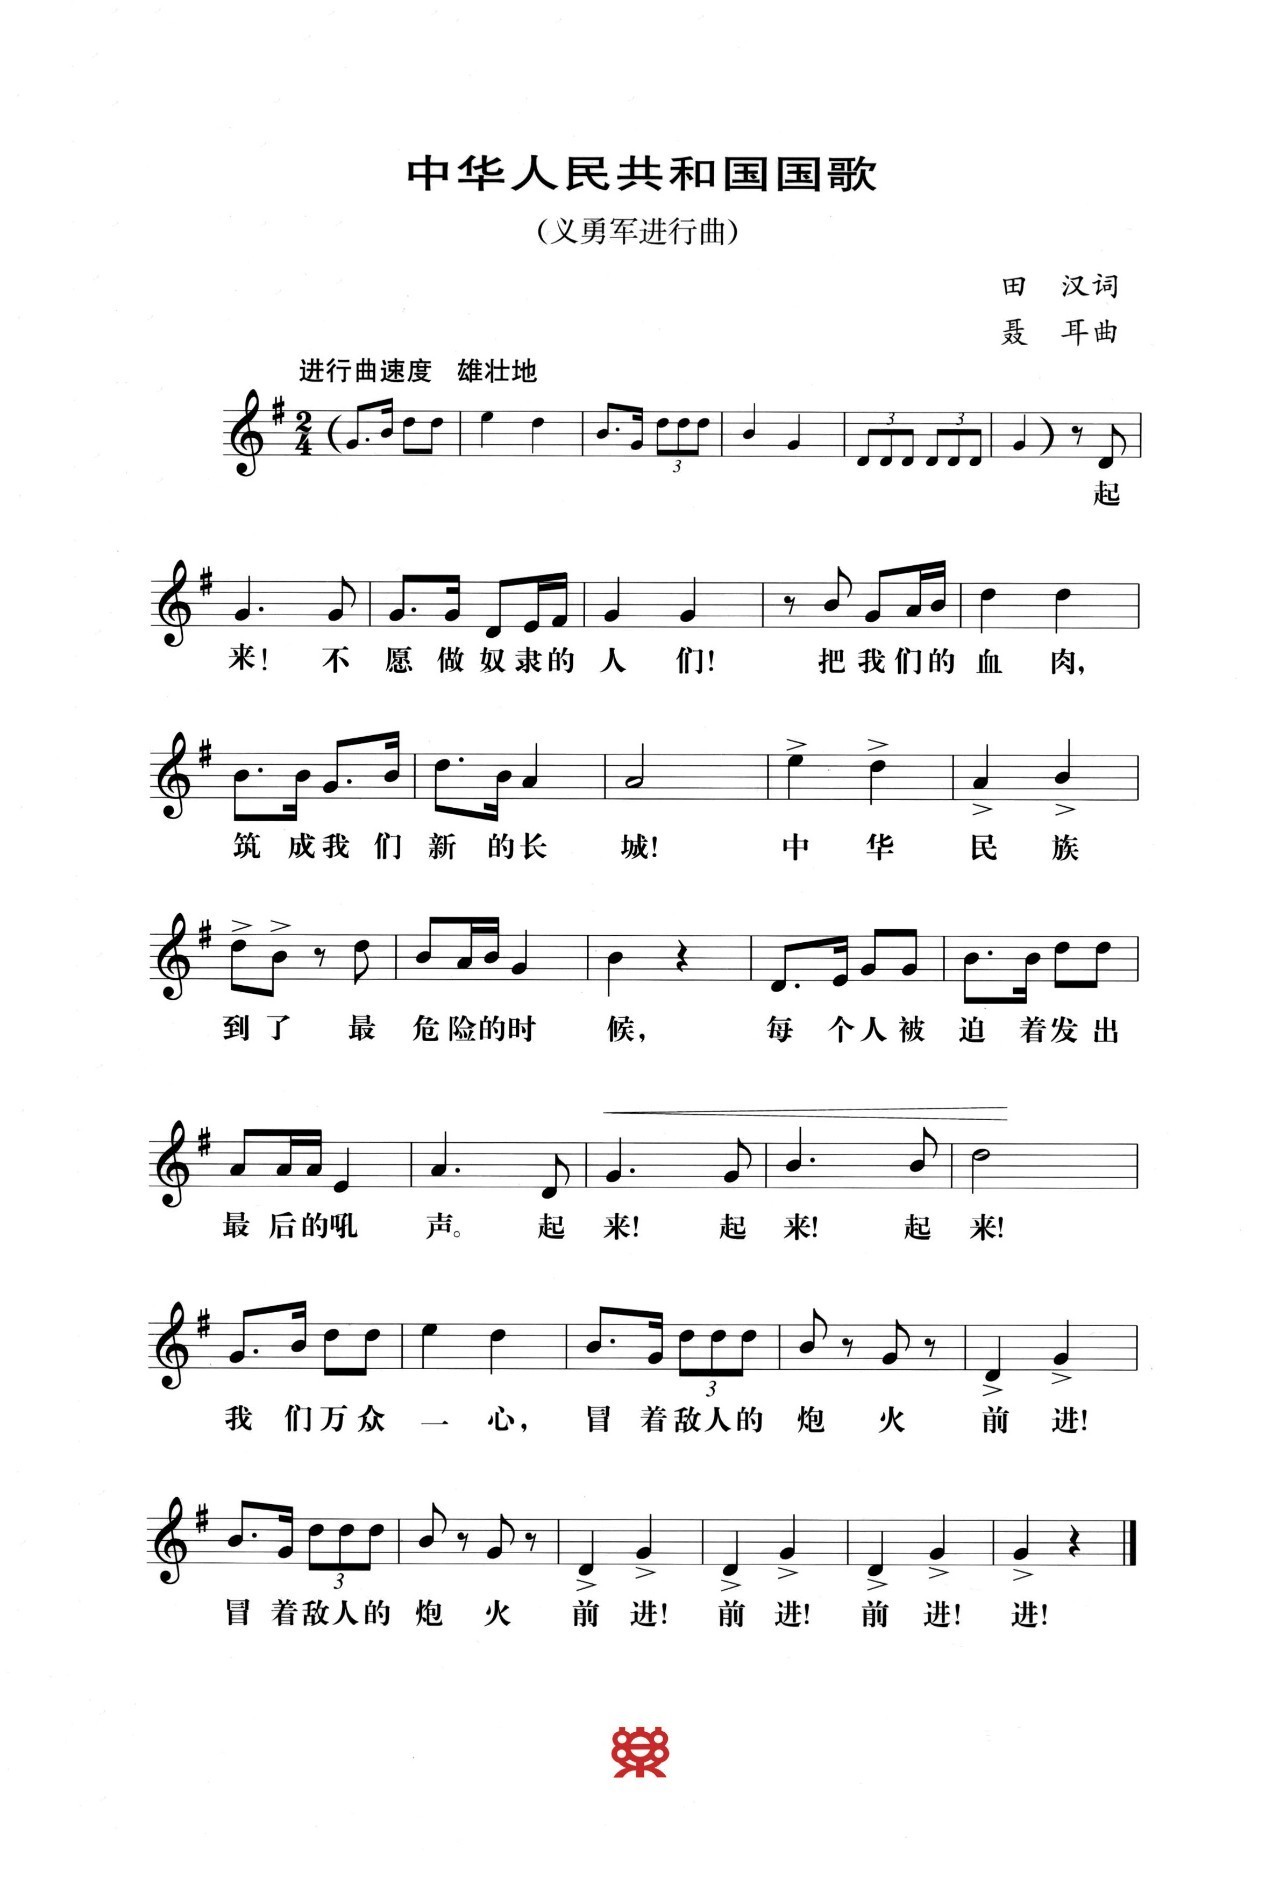 国歌标准曲谱和国歌官方录音版本,应当在中国政府网上发布.